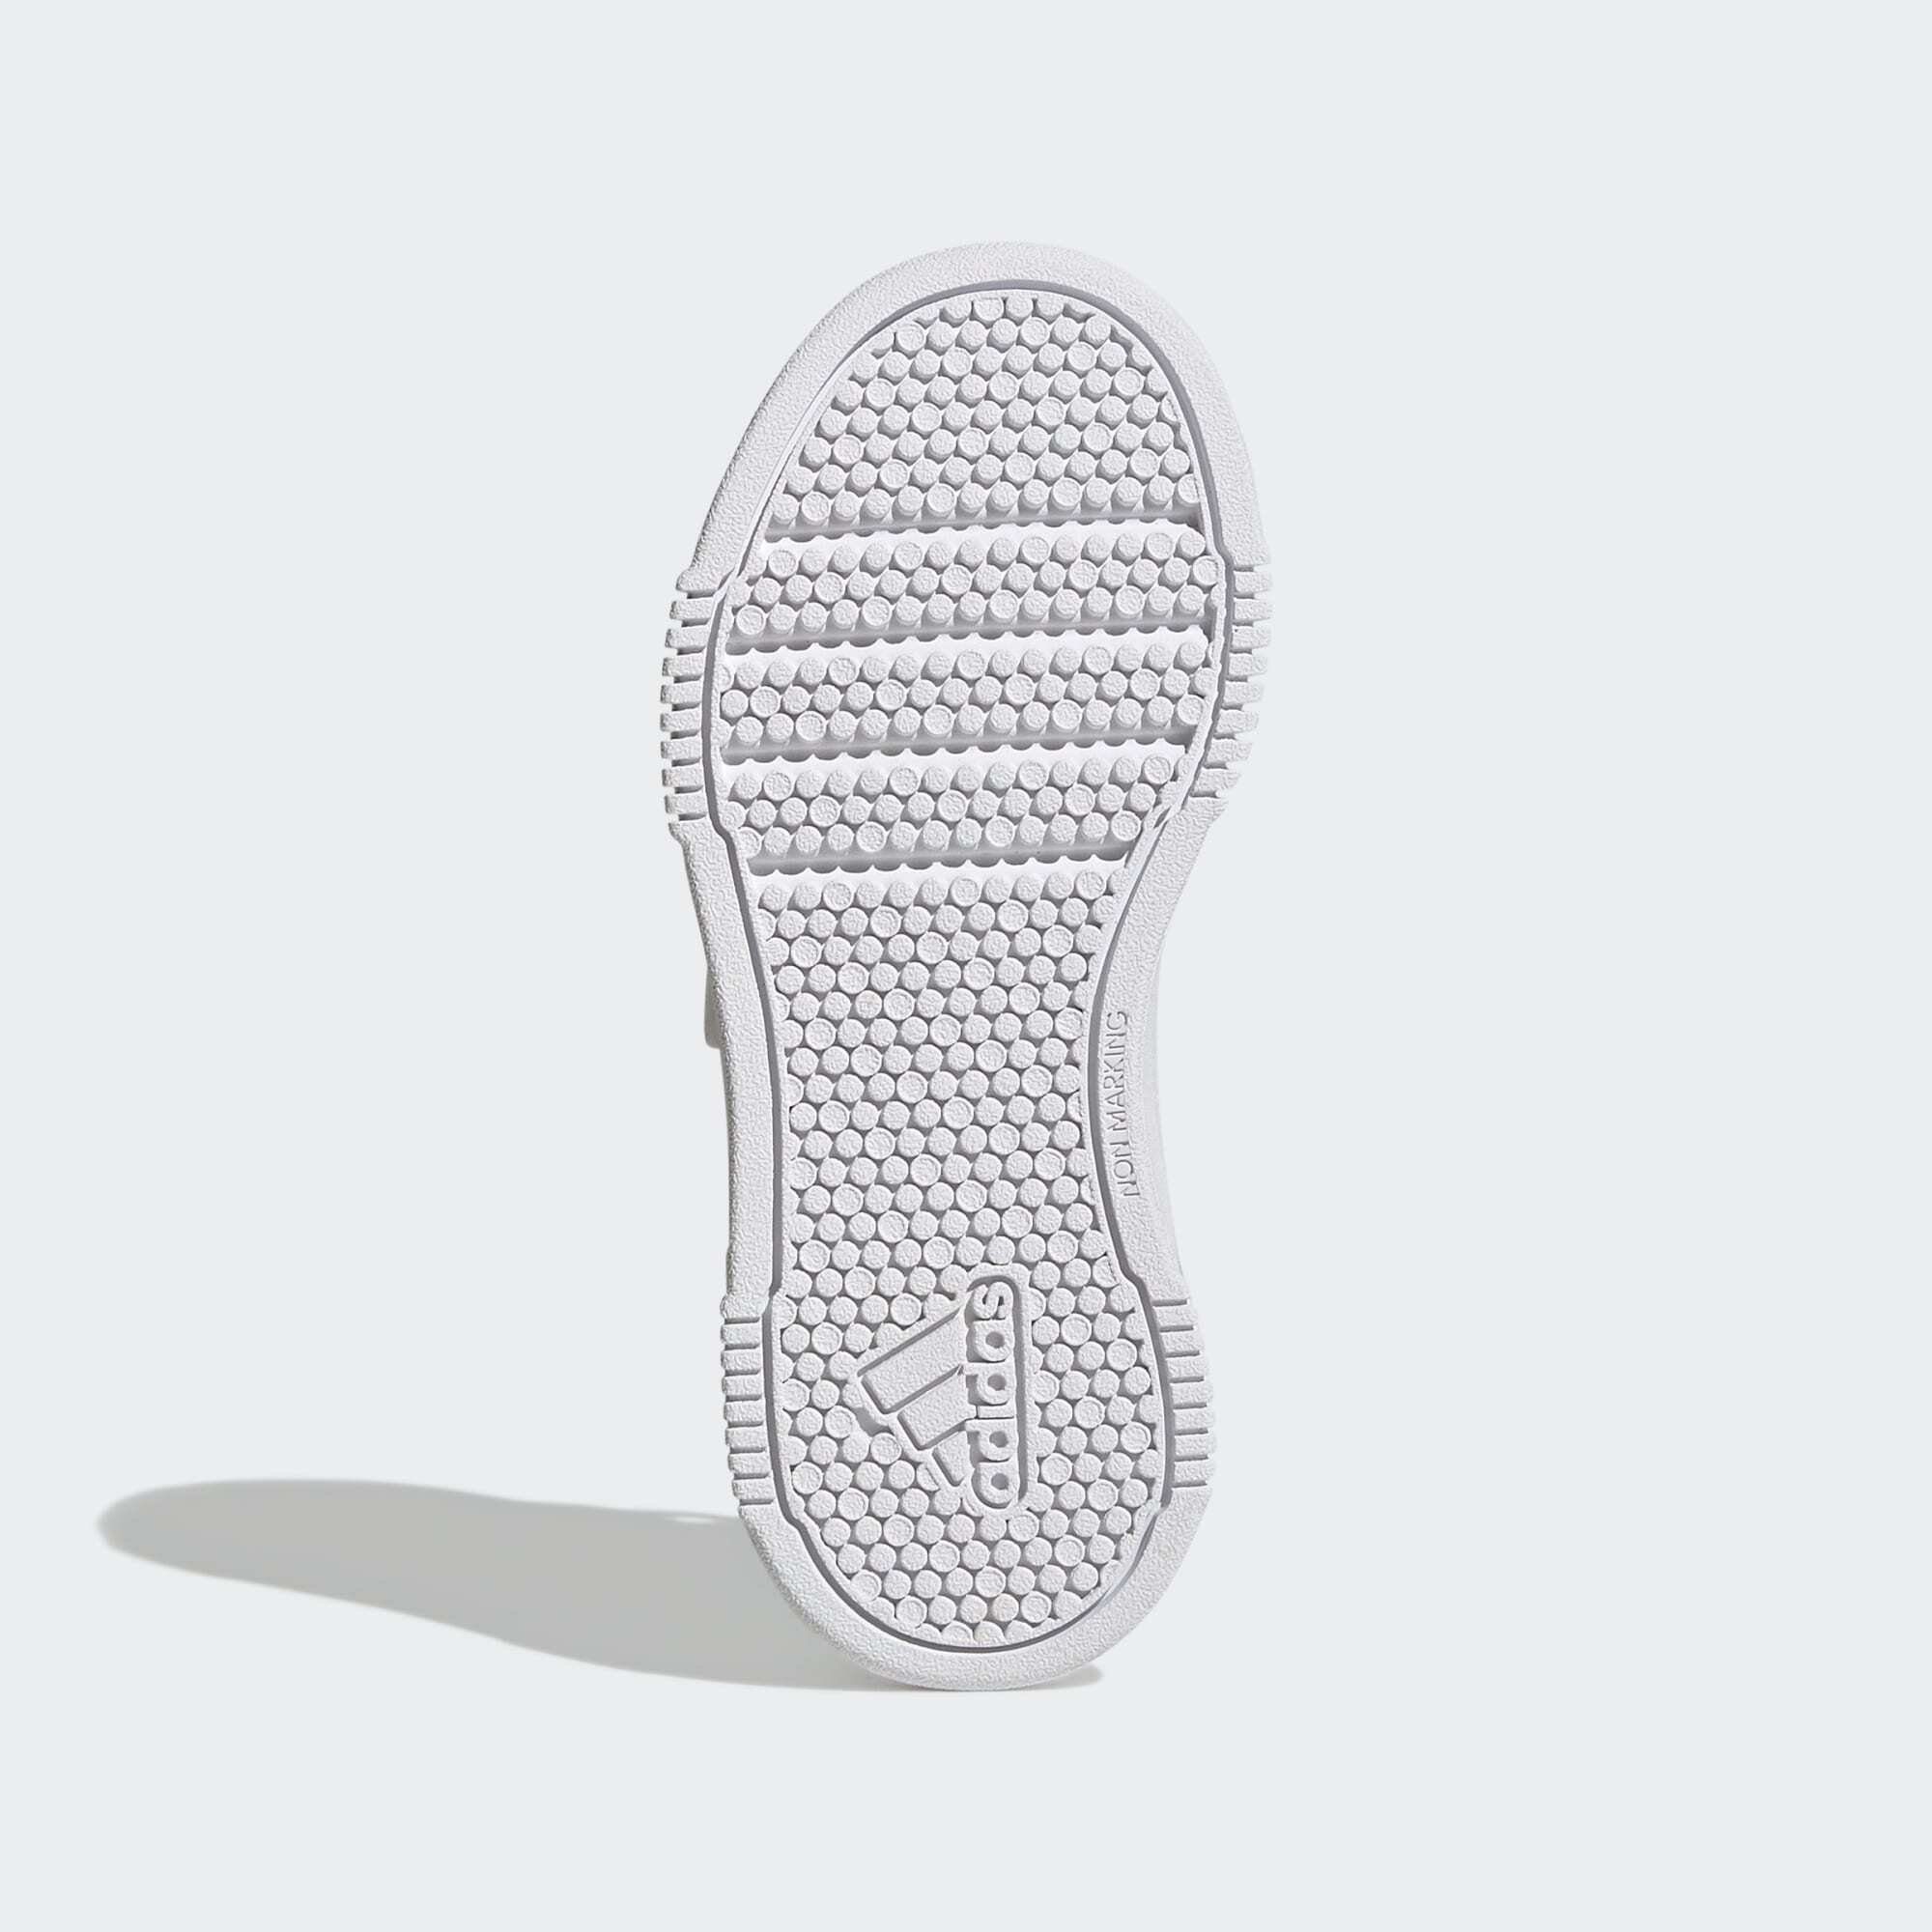 LOOP adidas / One White White AND SCHUH Sportswear HOOK Cloud Grey Sneaker TENSAUR Cloud /